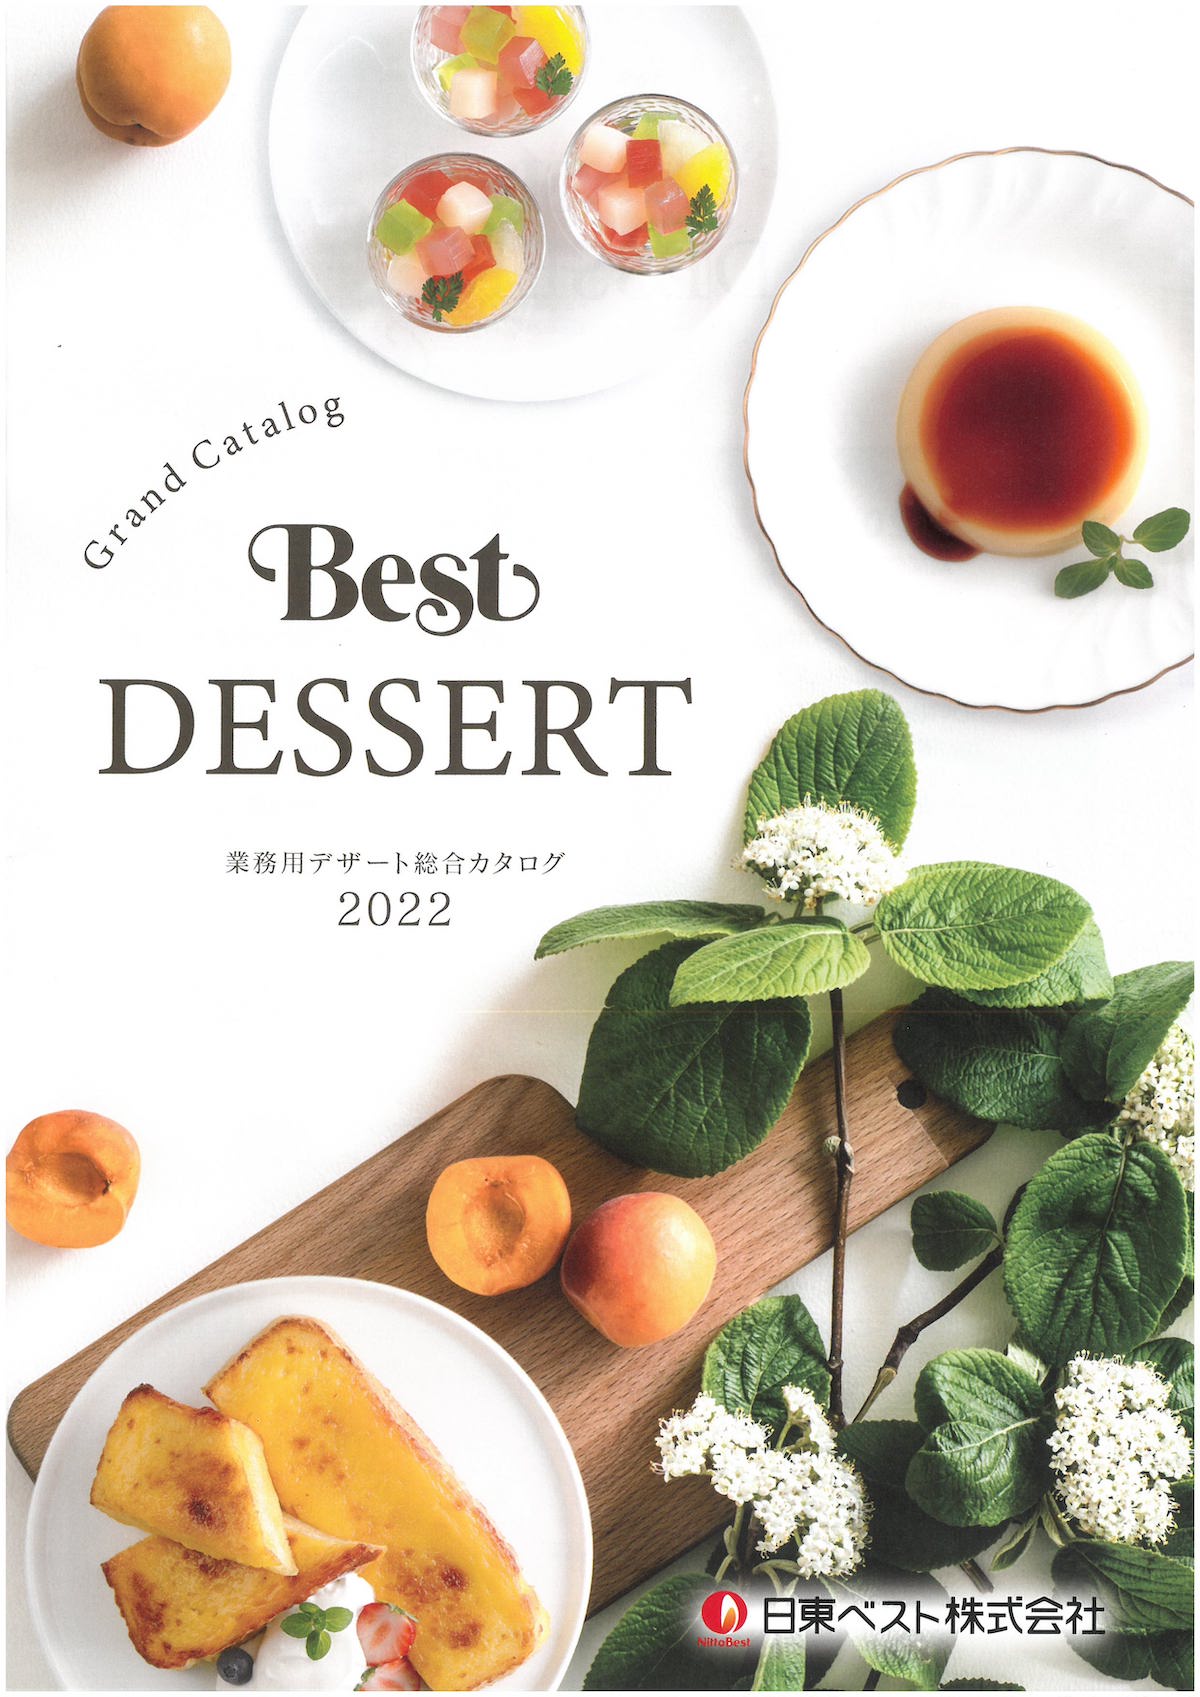 日東ベスト2022業務用デザート総合カタログ Best Dessert GRAND CATALOG